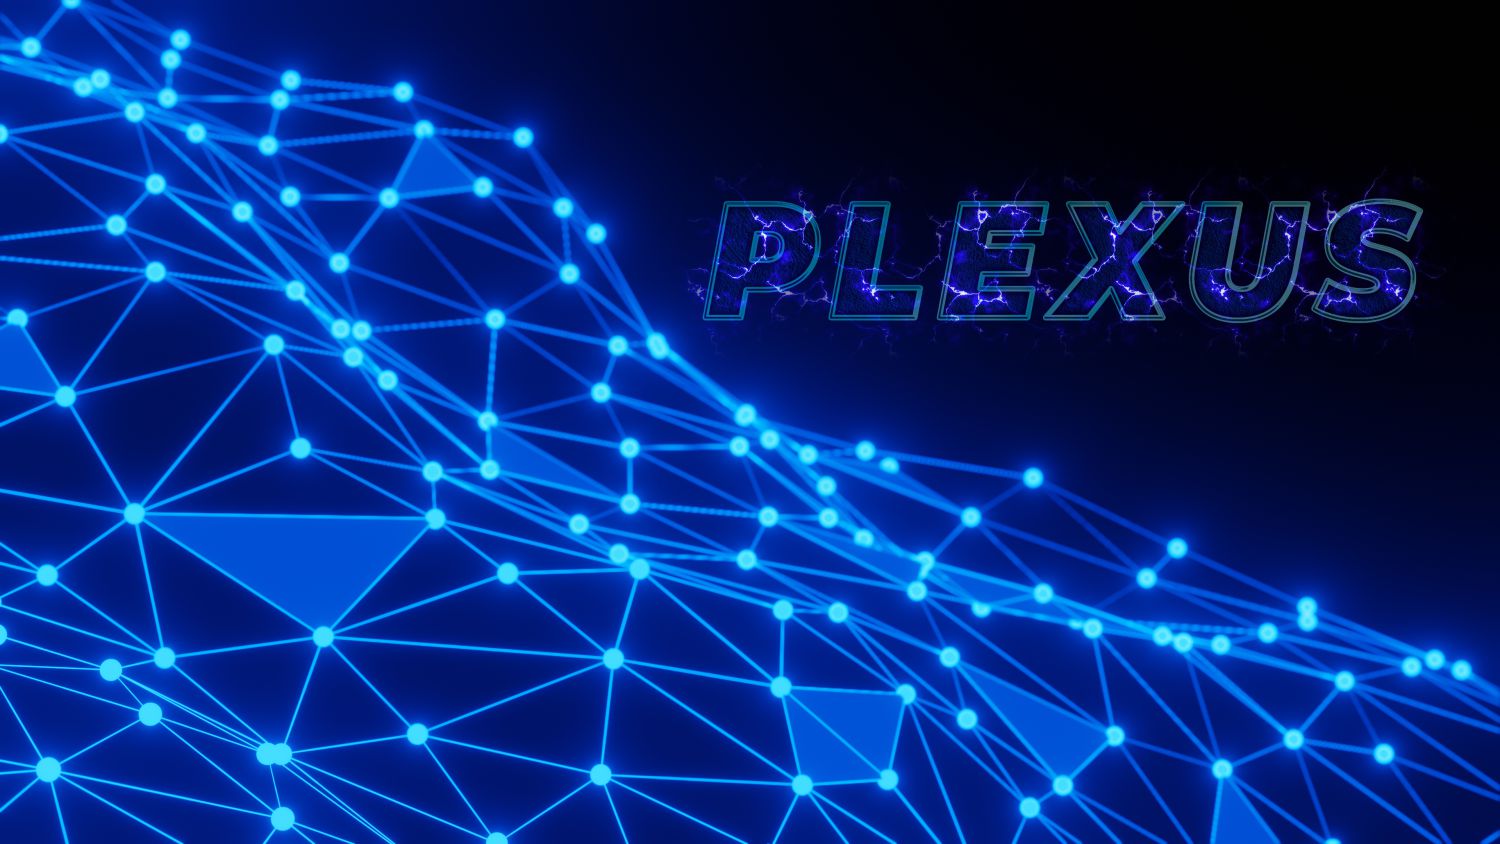 3D Plexus 4K Background Free High Resolution Download From Coreldrawdesign